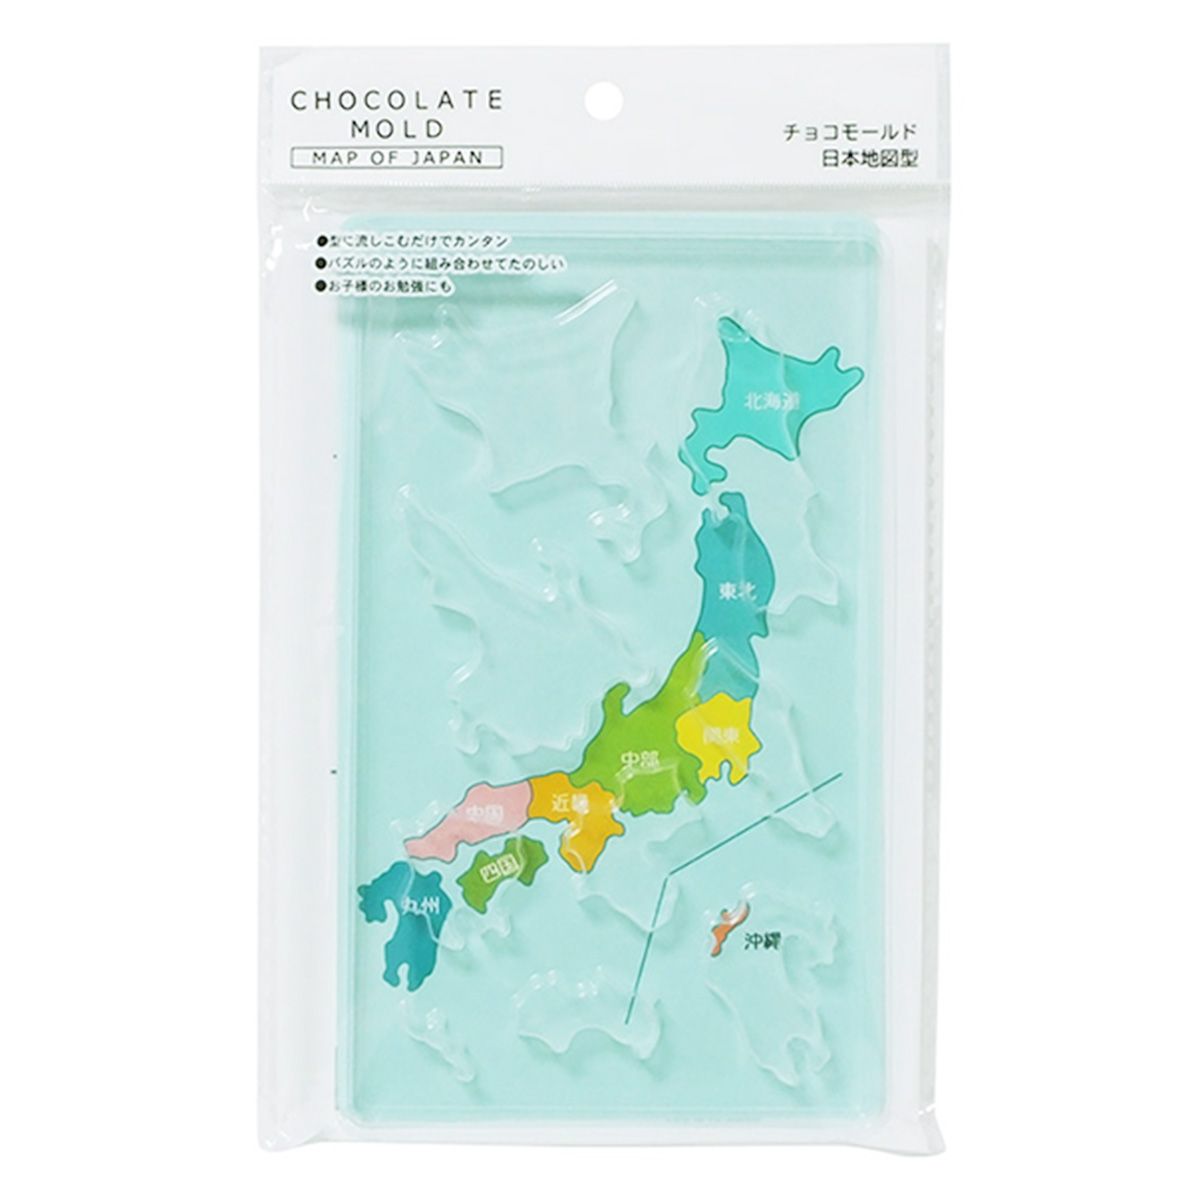 チョコレート型 バレンタイン チョコモールド日本地図型 306749